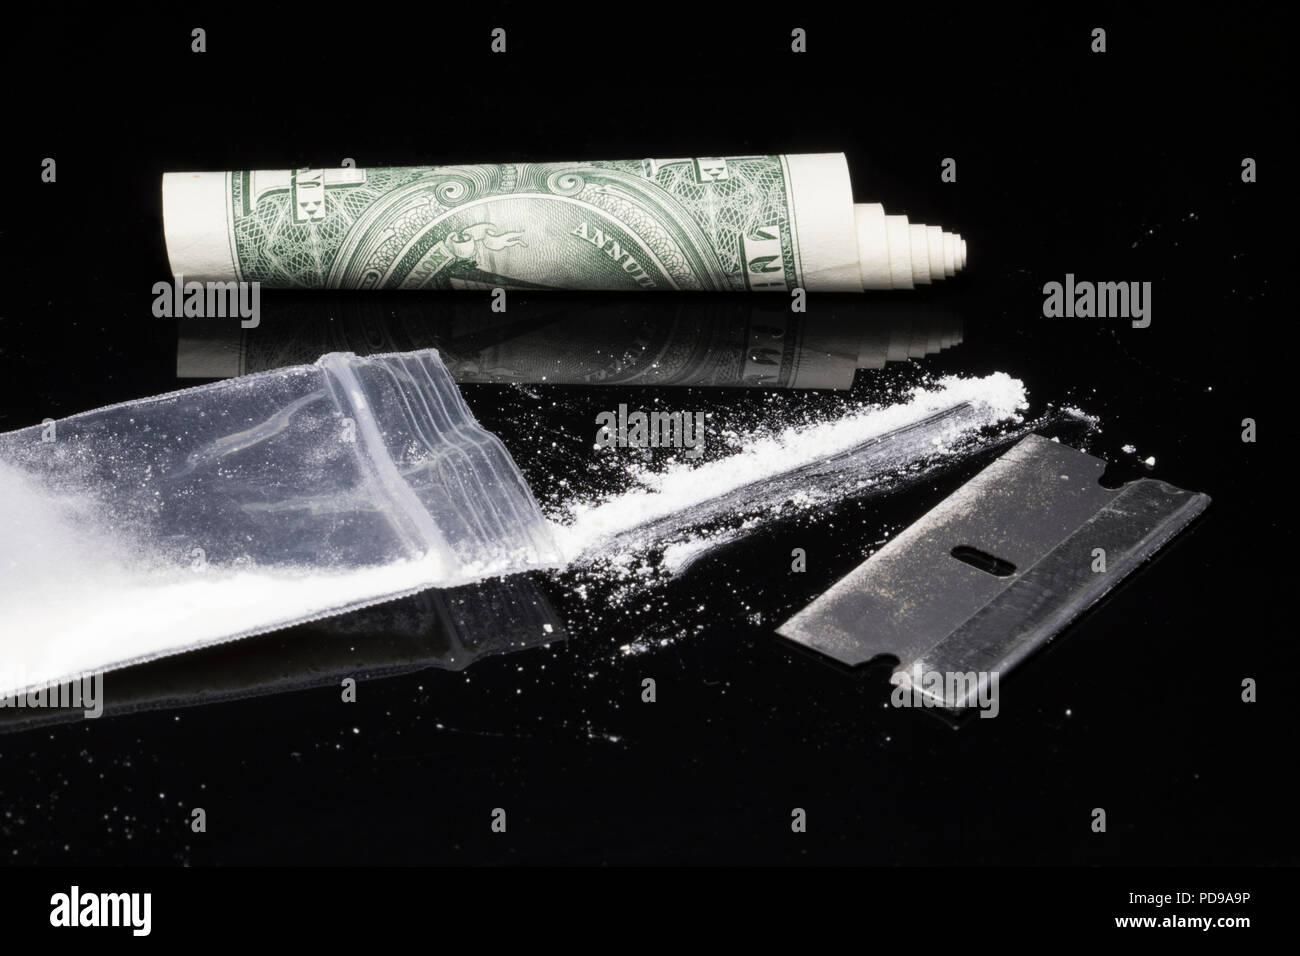 Kokain, Rasierklinge und rollte Dollar Bill. Party Drogen auf den Aufstieg und der Krieg gegen Drogen. Stimulanzien und toxische illegale Drogen. Stockfoto